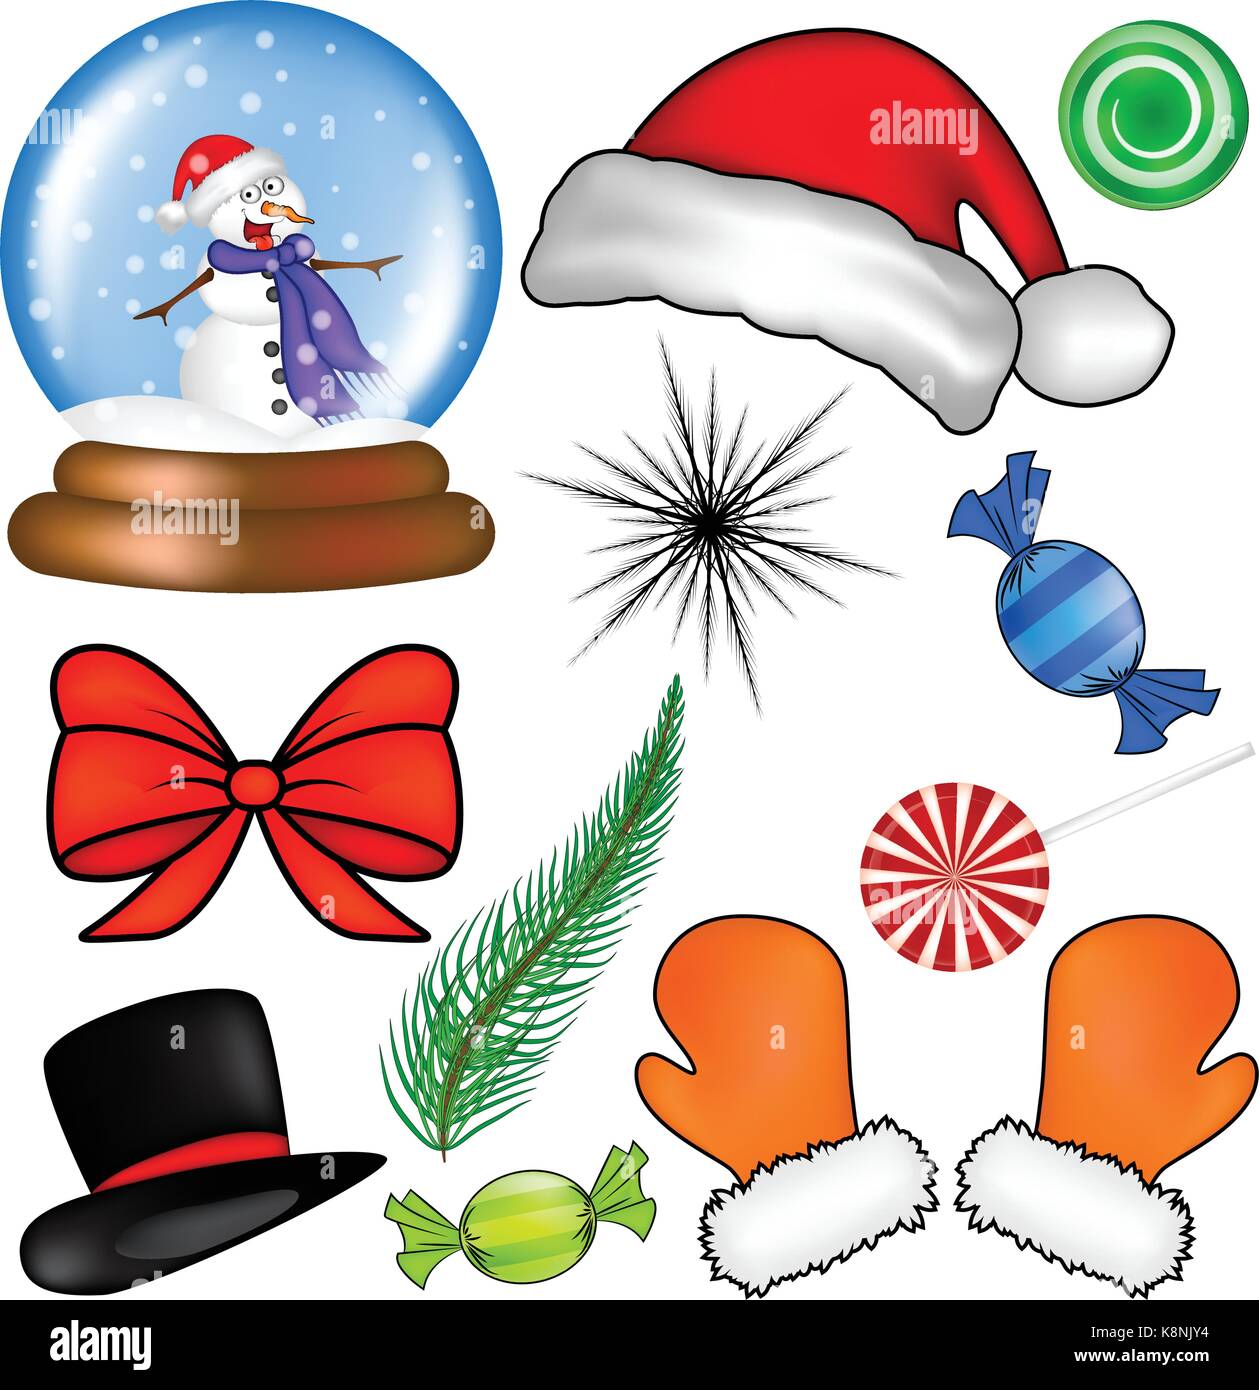 Weihnachten Icon Set, Symbol, Design. Winter Vector Illustration auf weißem Hintergrund. Stock Vektor